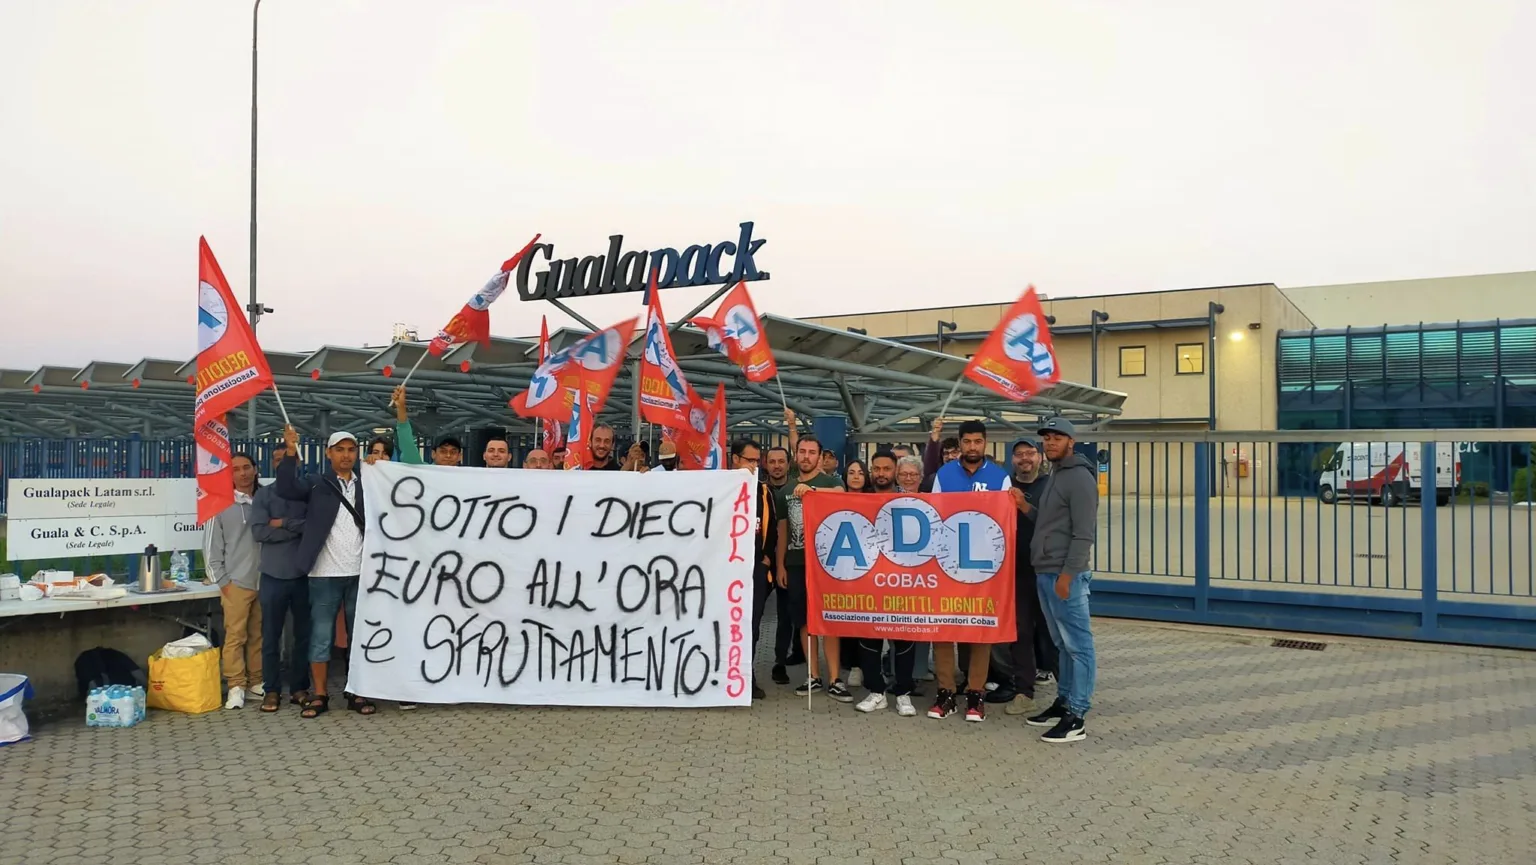 Sindacato di Base ADL Cobas - Accordo alla Gualapack su mensa e presenza: insufficiente ma una prima vittoria dei lavoratori